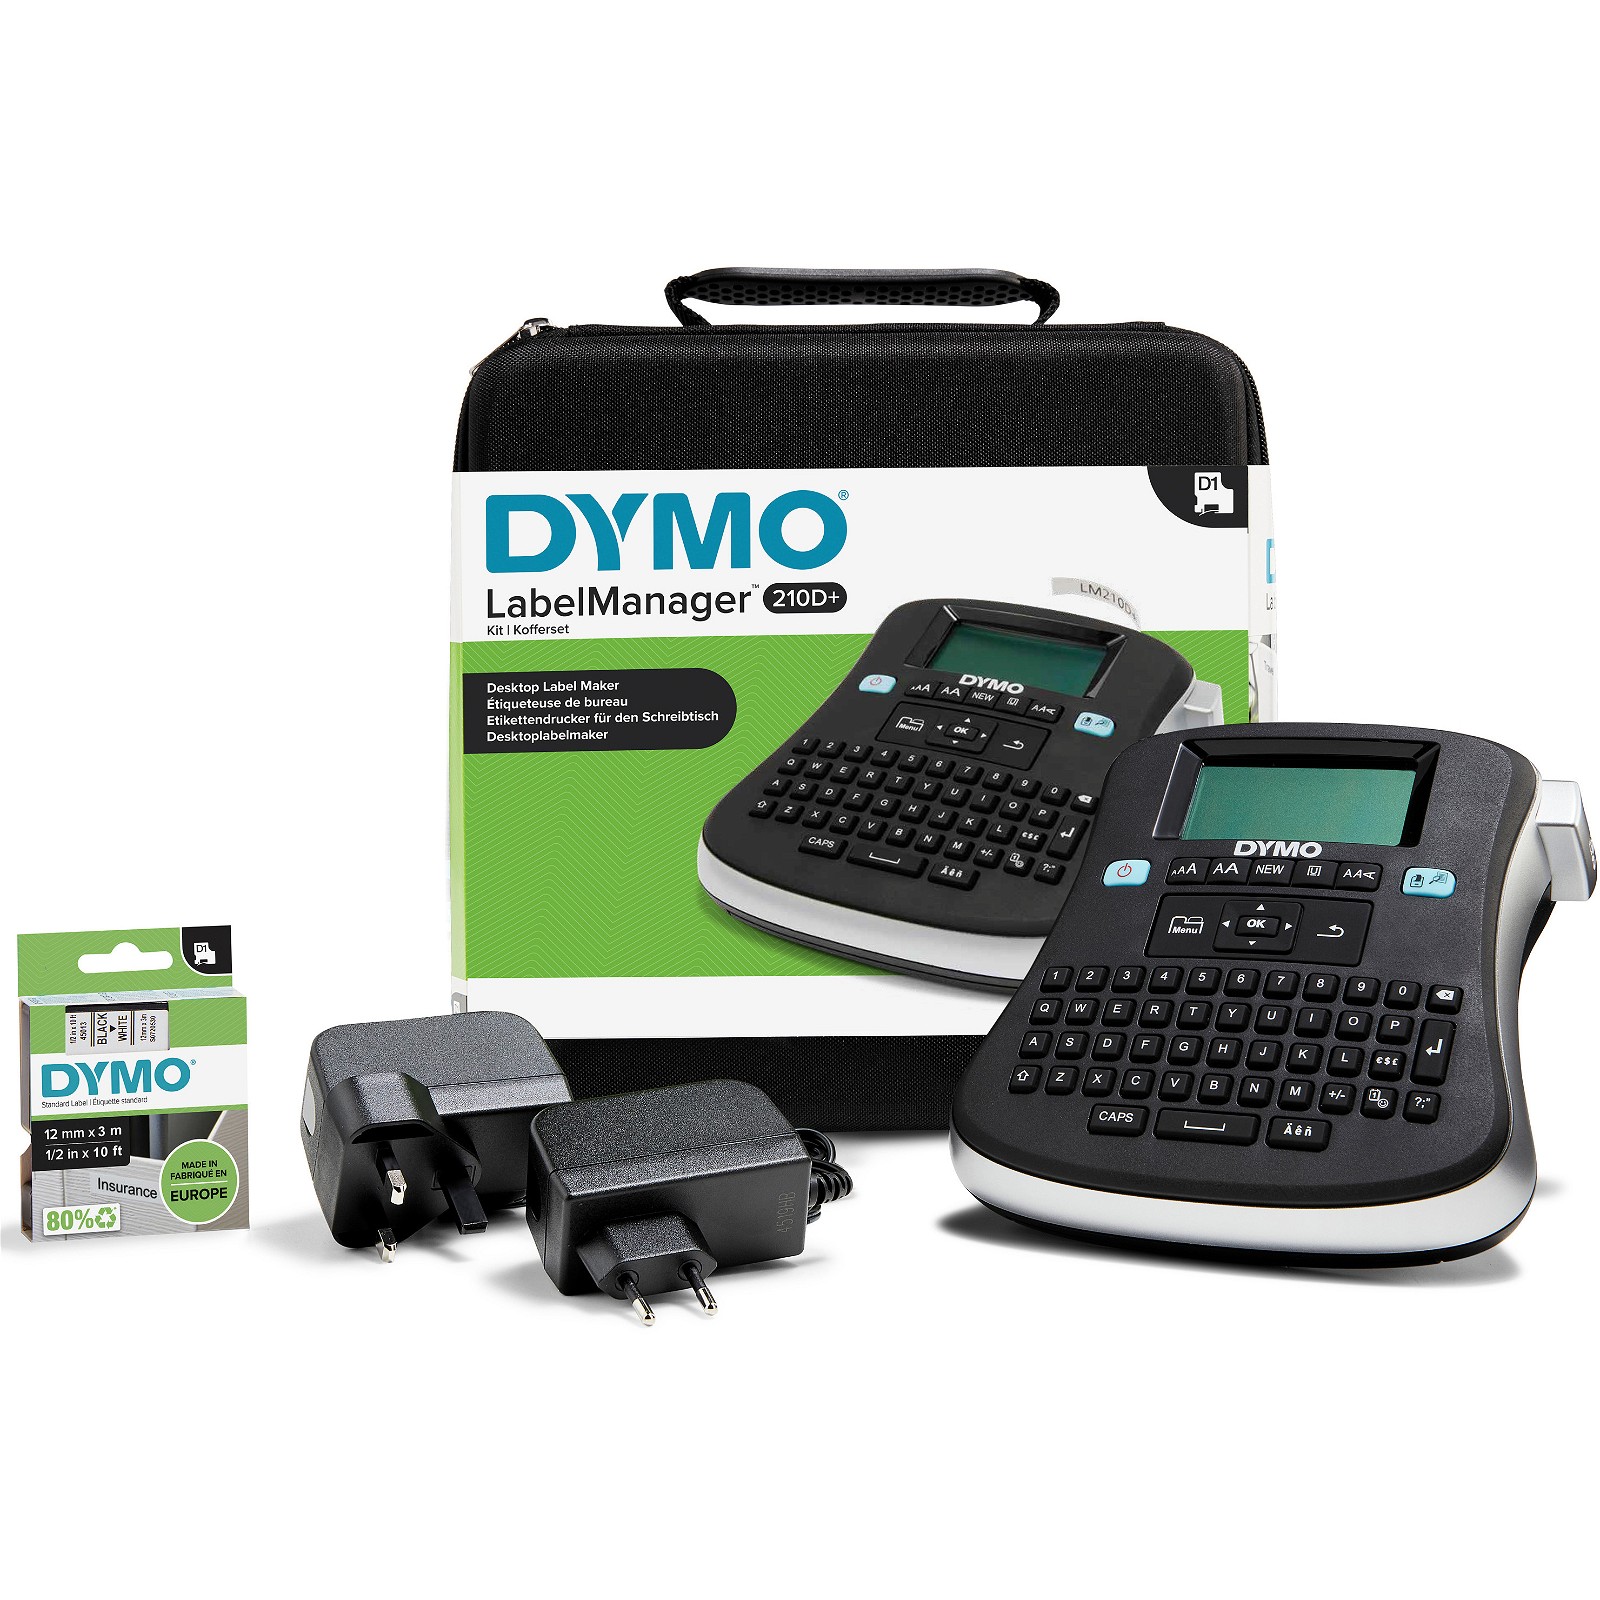 Dymo LabelManager 210D+ labelprinter kit case